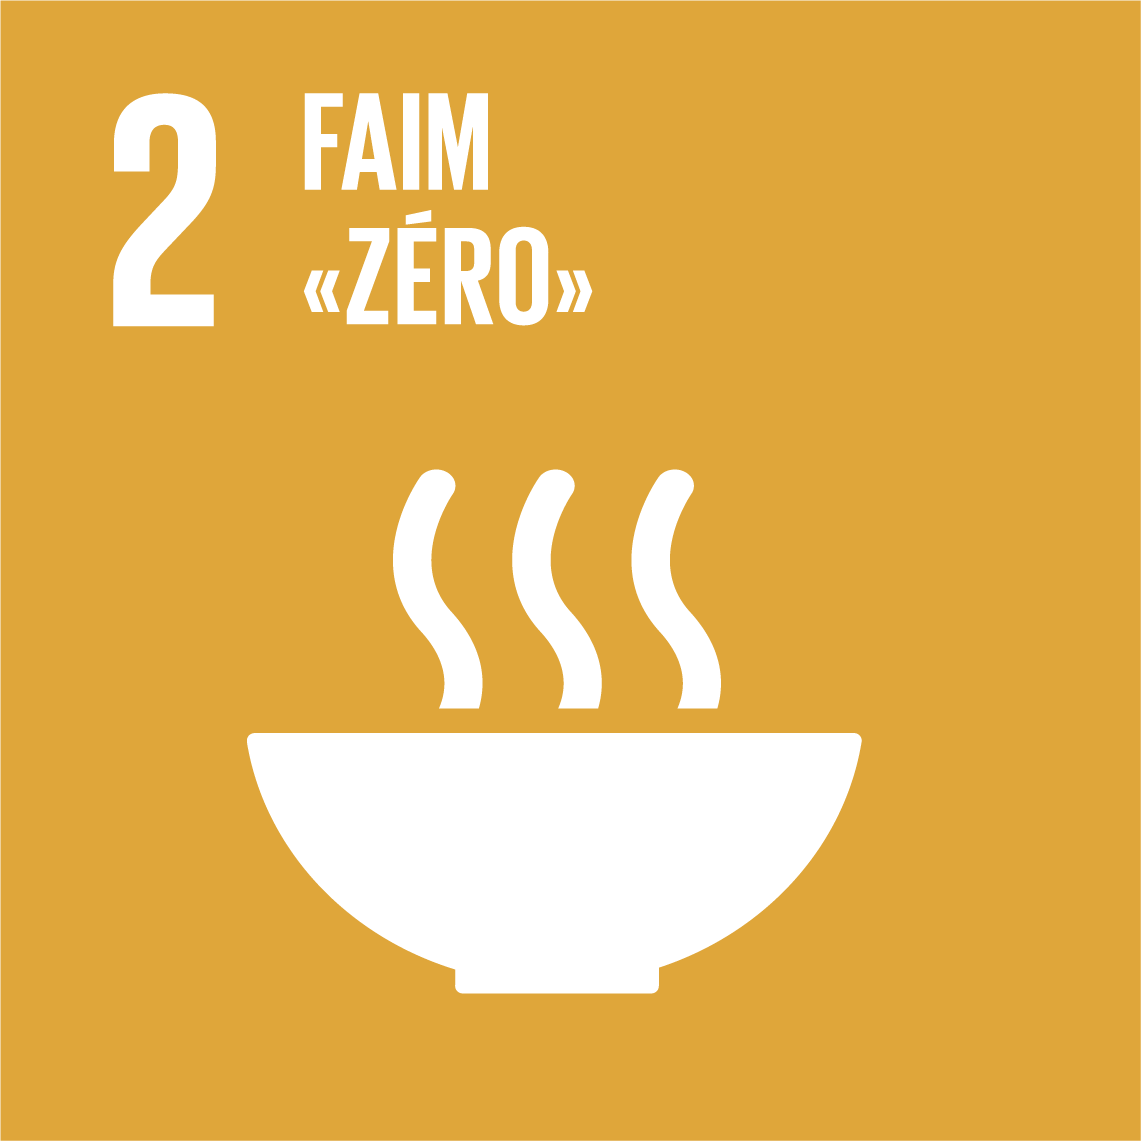 Objectifs de développement durable 2 - Faim « zéro »